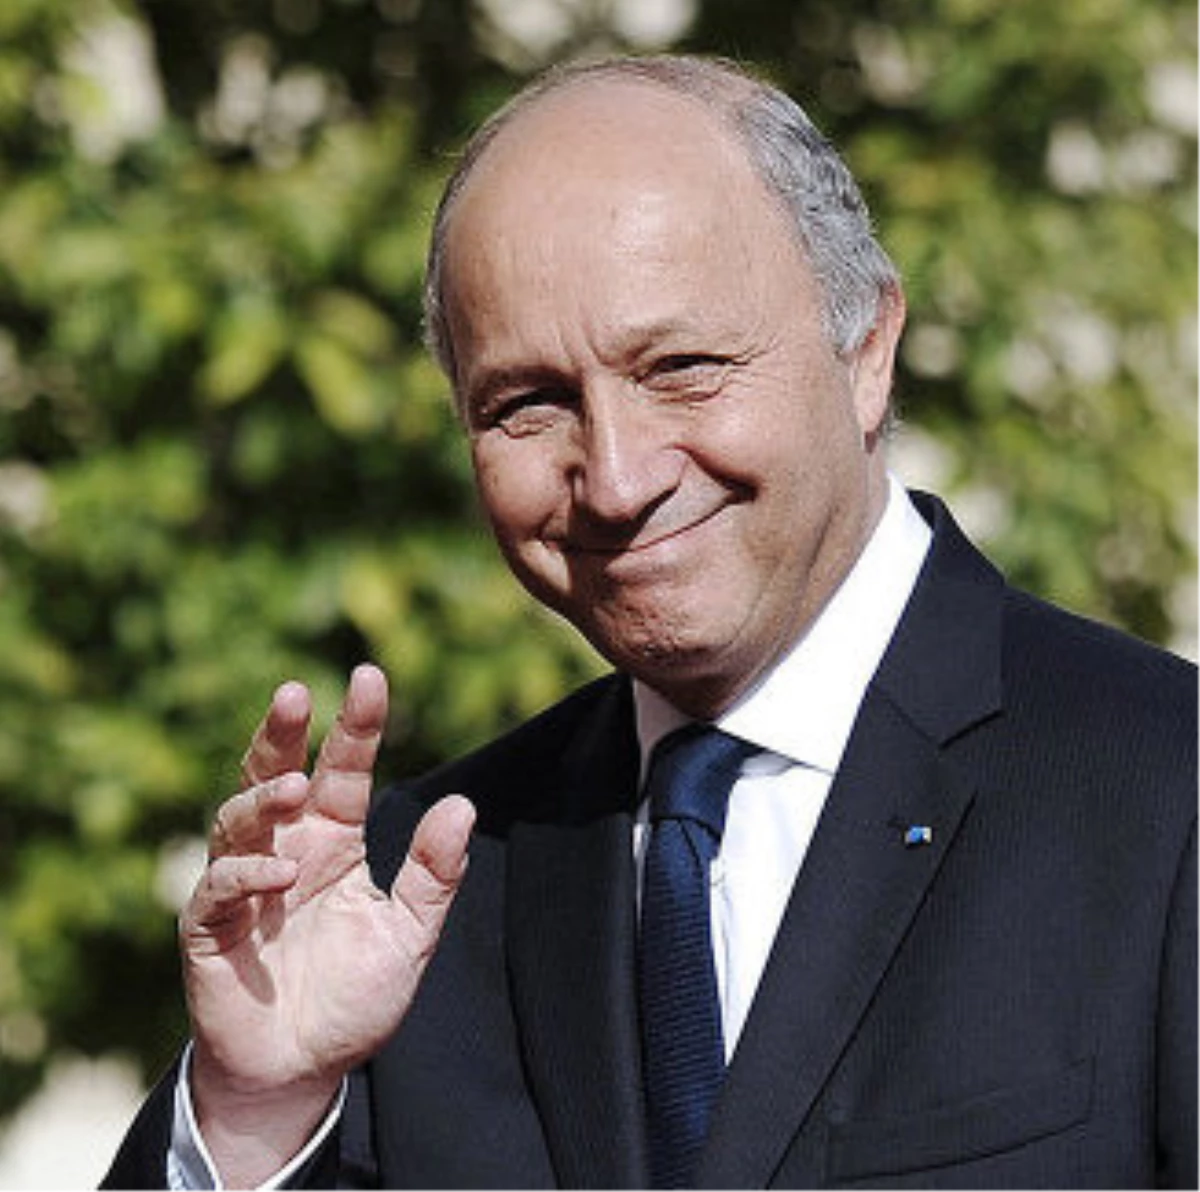 Fransa Dışişleri Bakanı Fabius: "Esed Rejiminin Sonu Yaklaşıyor"